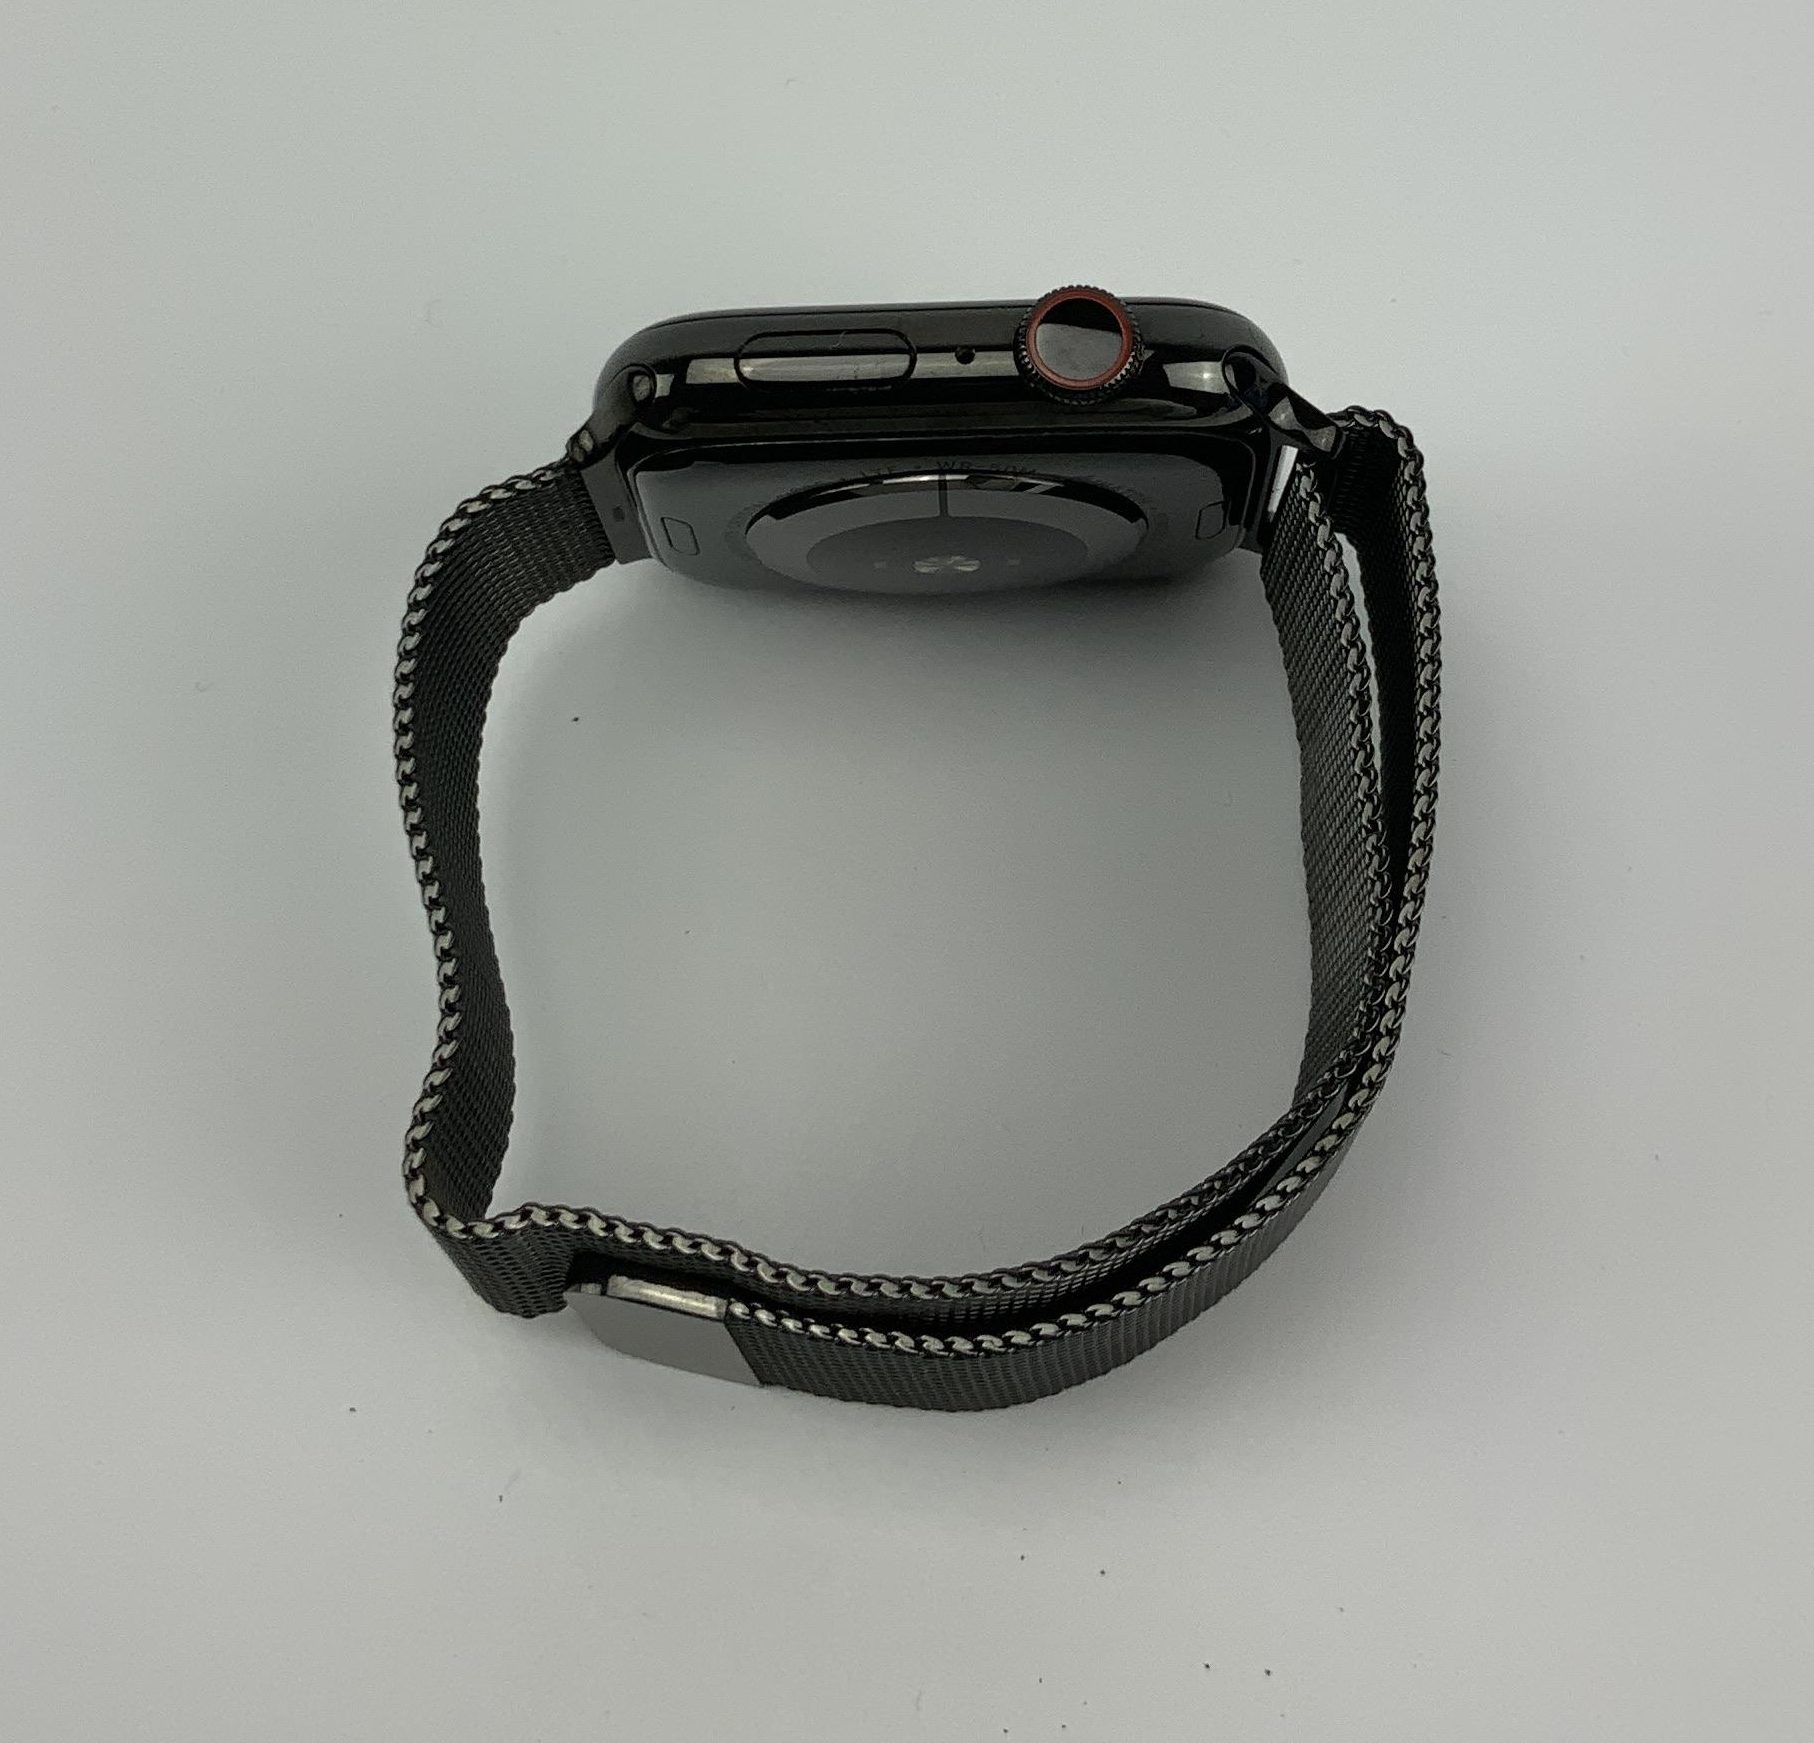 Watch Series 4 Steel Cellular (44mm), Space Black, Space Black Milanese Loop, bild 2